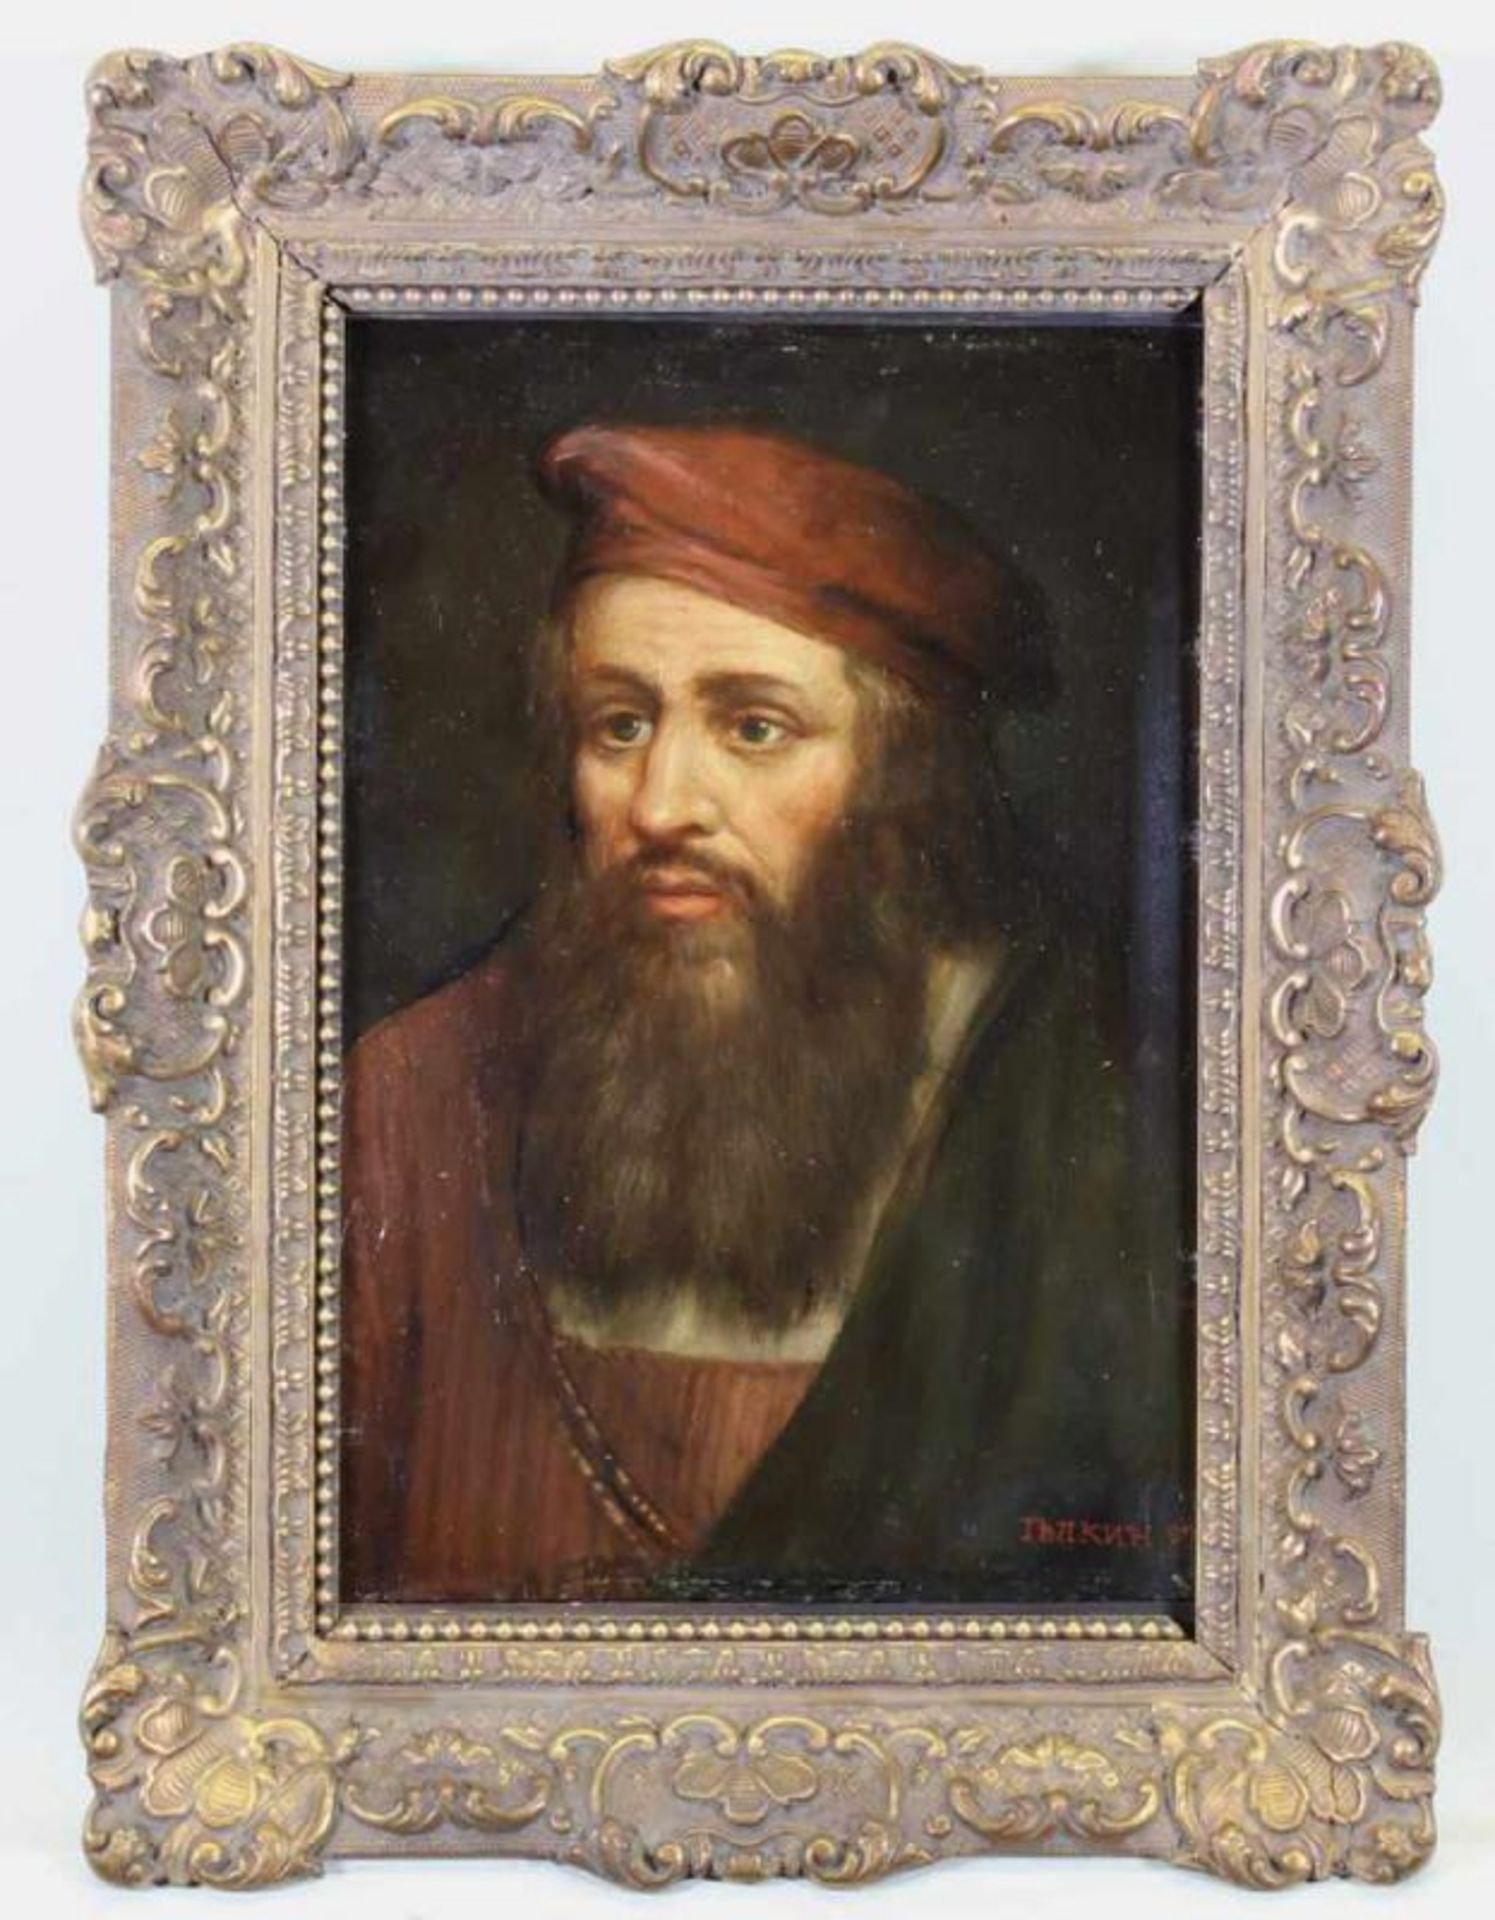 Unbekannter Maler (20. Jh.), "Bärtiger Mann", Öl auf Holz, kyrillisch signiert und bezeichnet 89, 27 - Image 2 of 4